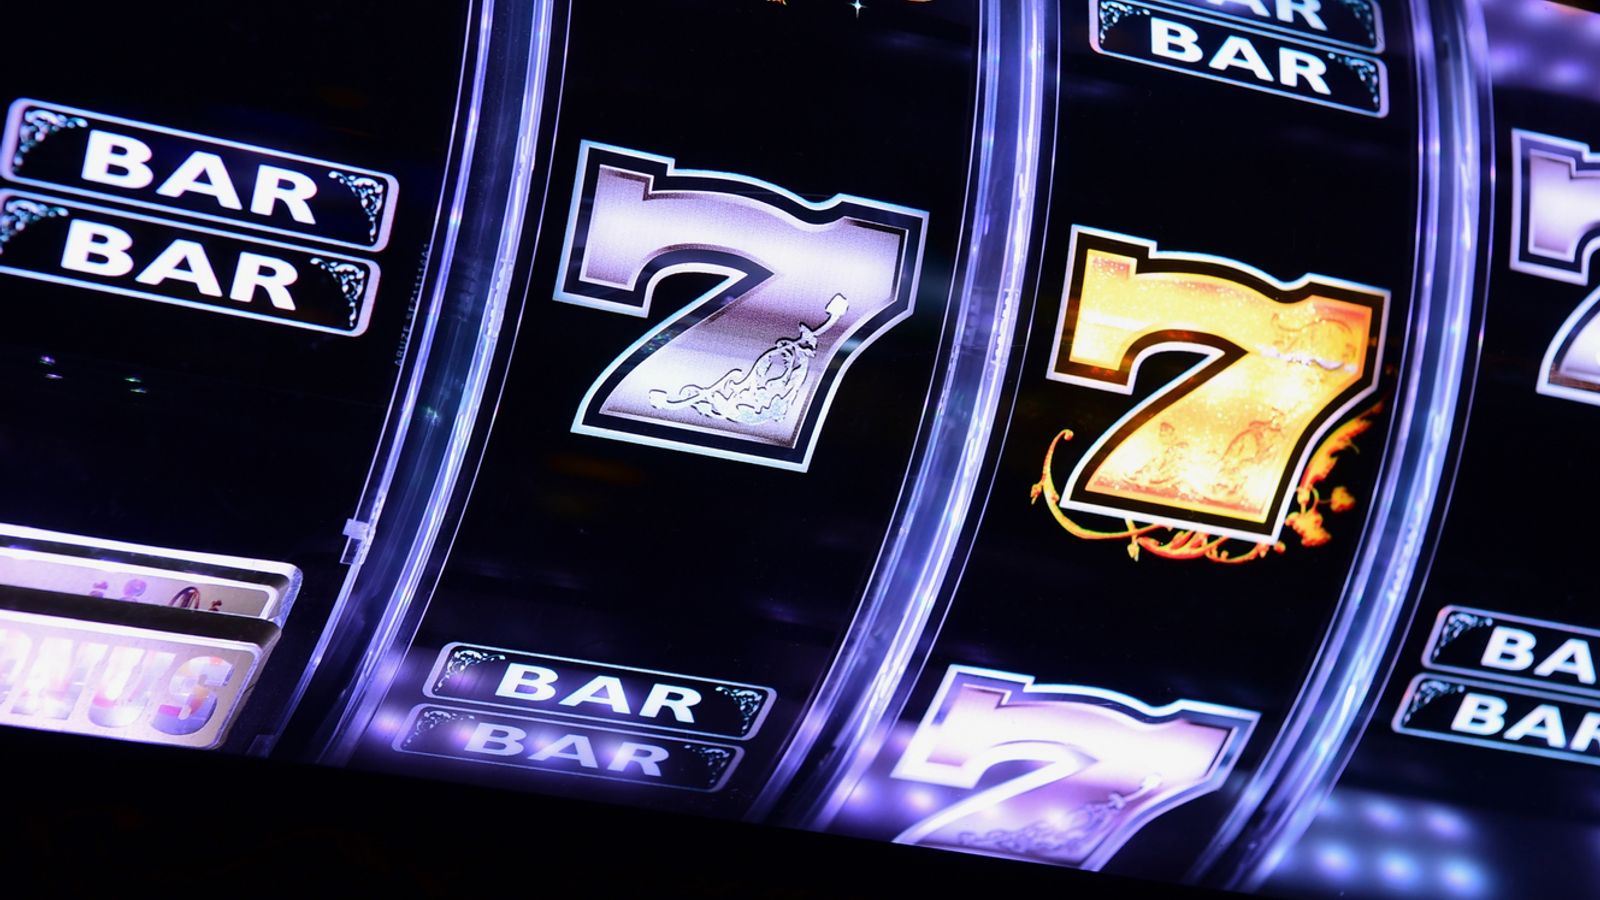 Comment les opérateurs de jeux d’argent pourraient être davantage ciblés après l’amende de 19,2 millions de livres sterling de William Hill |  Actualité économique